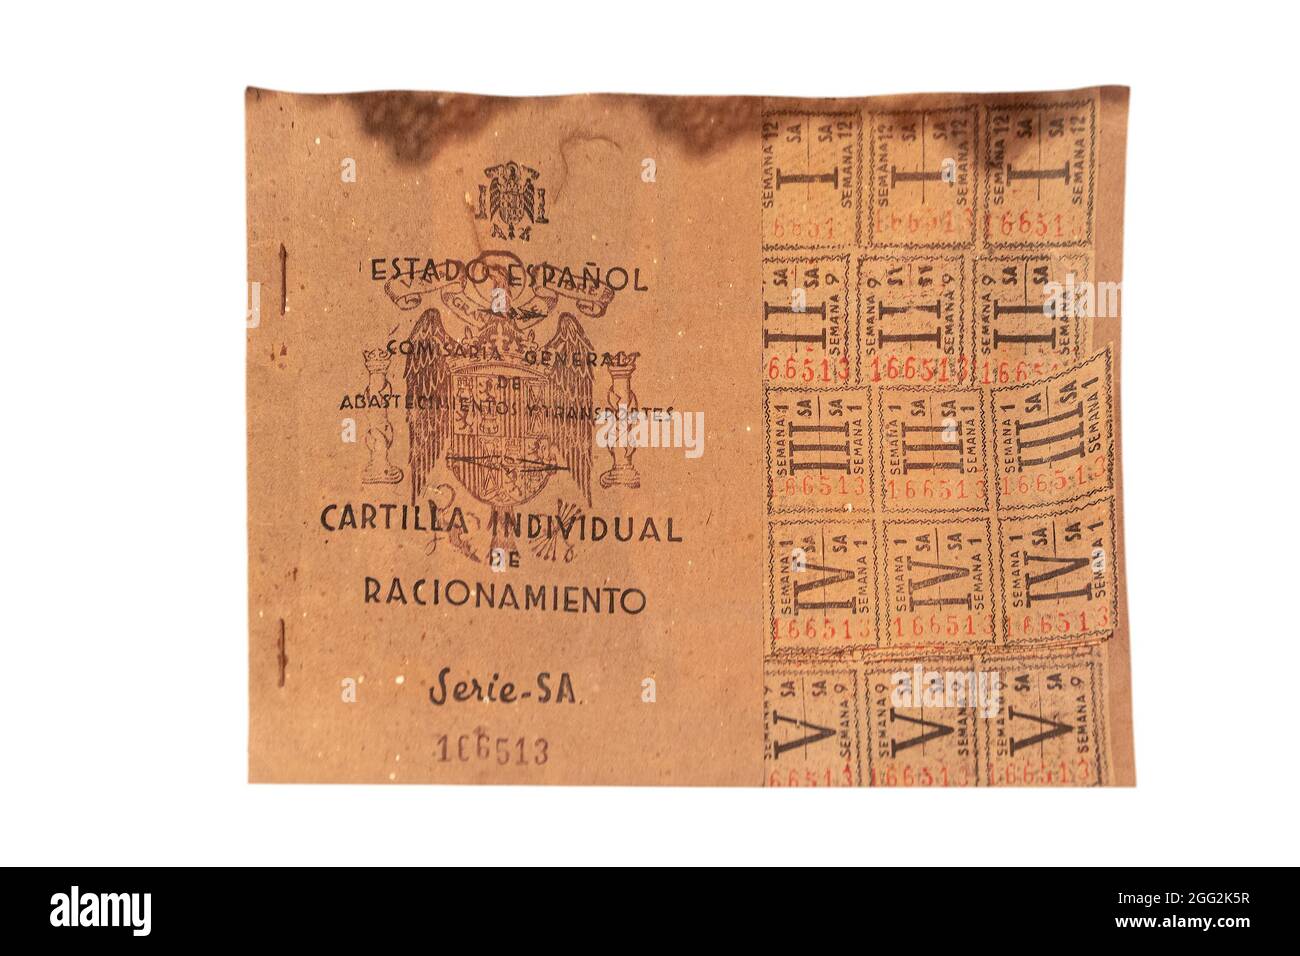 Salamanque, Espagne - 10 octobre 2017: Carte de rationnement espagnole avec coupons valables du 1939 au 1952 pendant la guerre civile espagnole.Photographie faite sur b blanc Banque D'Images